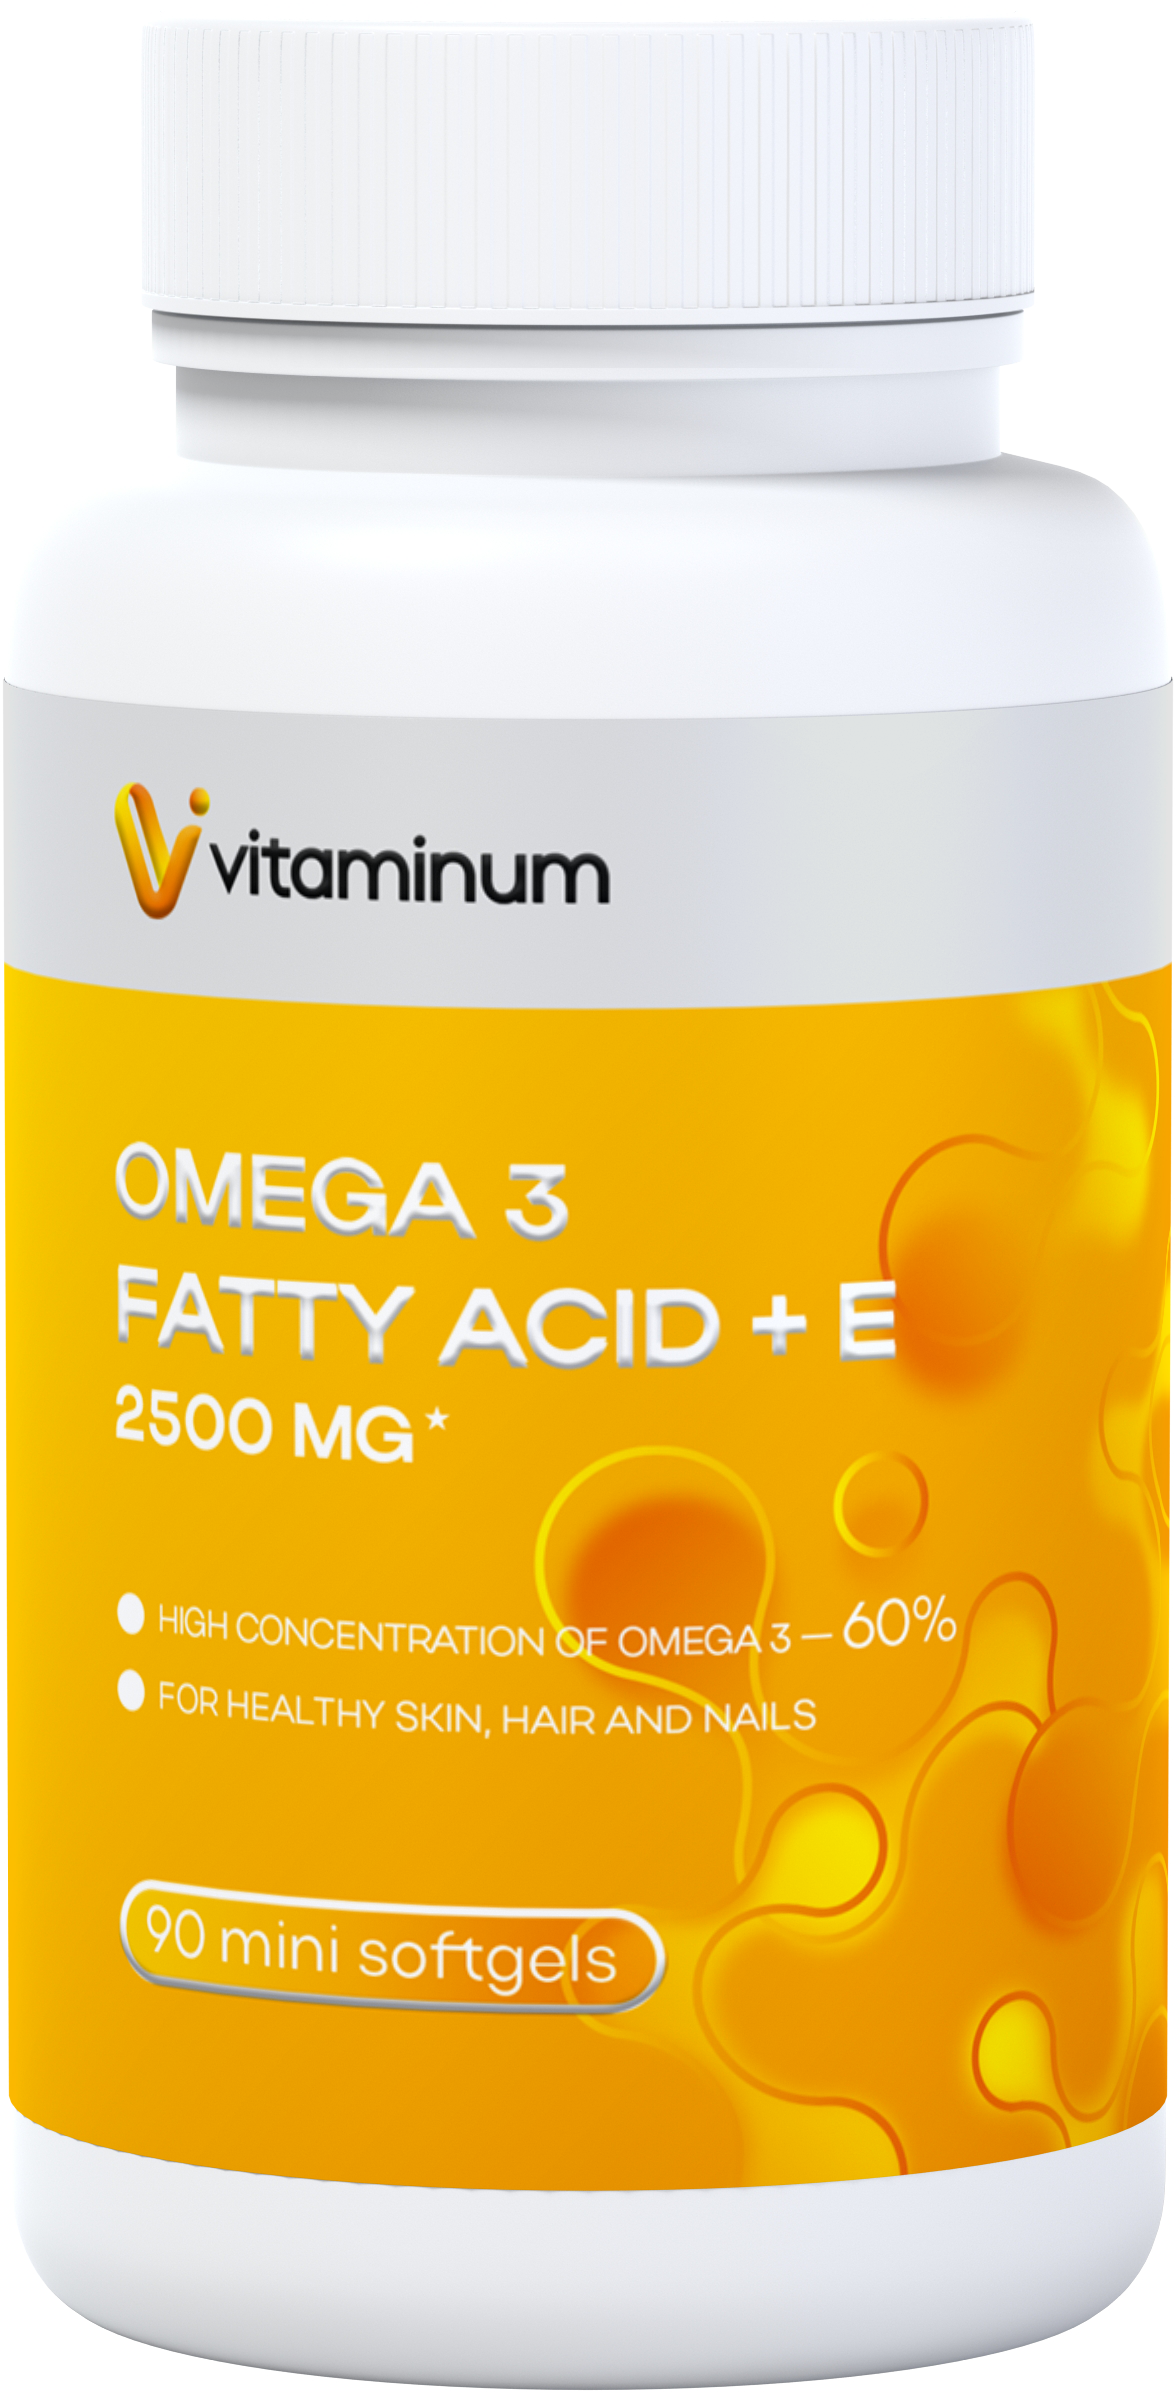  Vitaminum ОМЕГА 3 60% + витамин Е (2500 MG*) 90 капсул 700 мг   в Мегионе